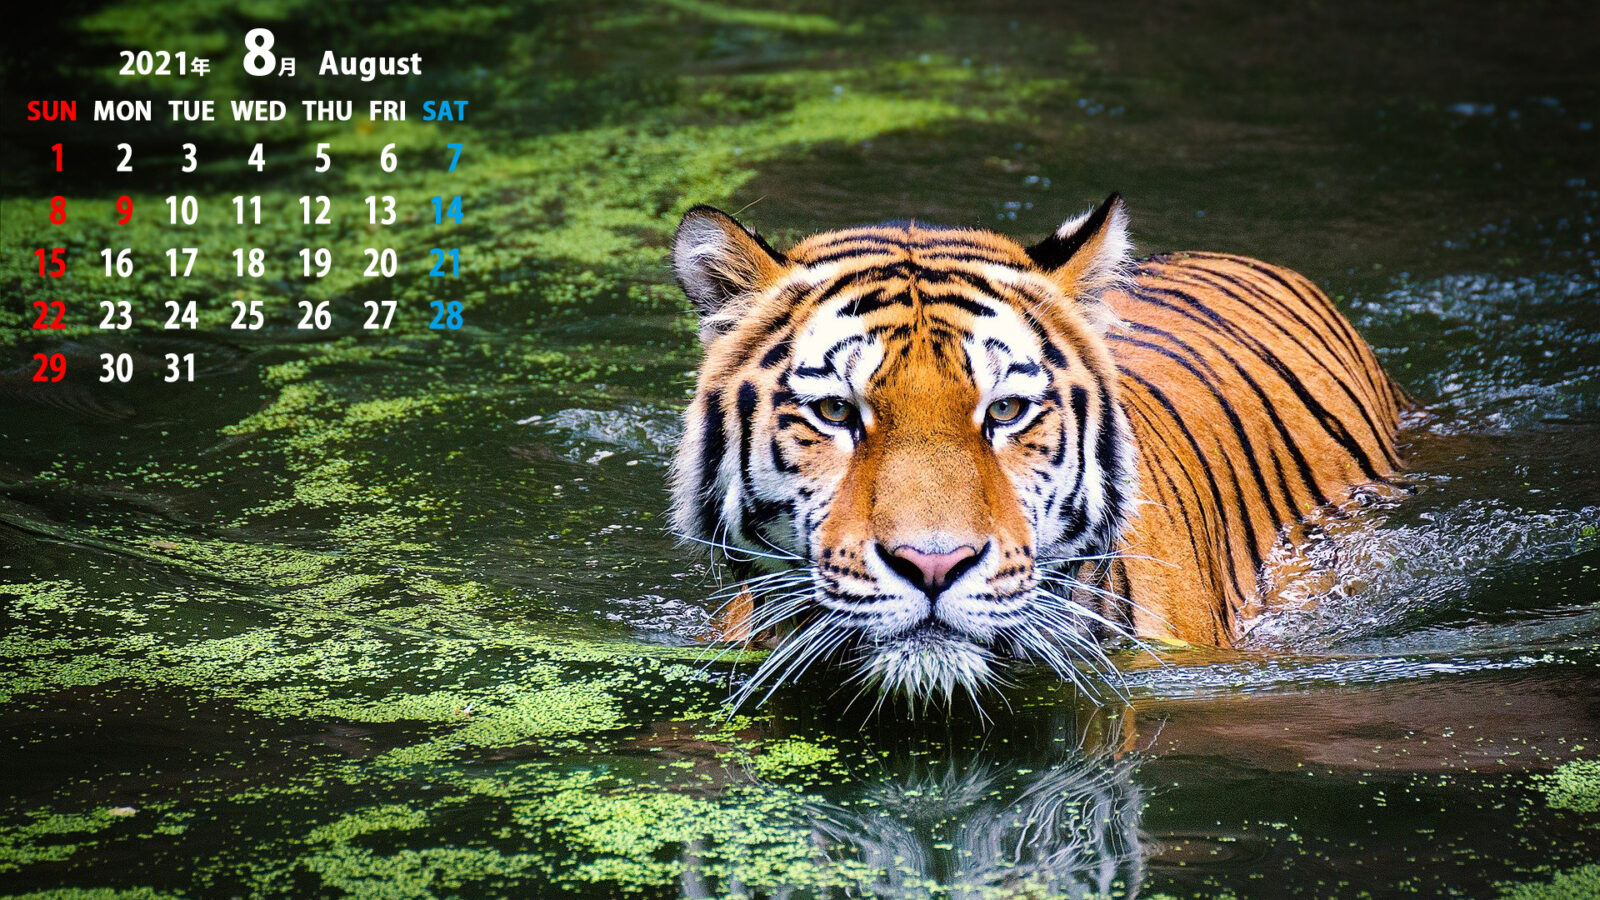 カレンダー壁紙 21年8月 Pc用複数サイズ無料 動物 風景 建造物など まなびっと